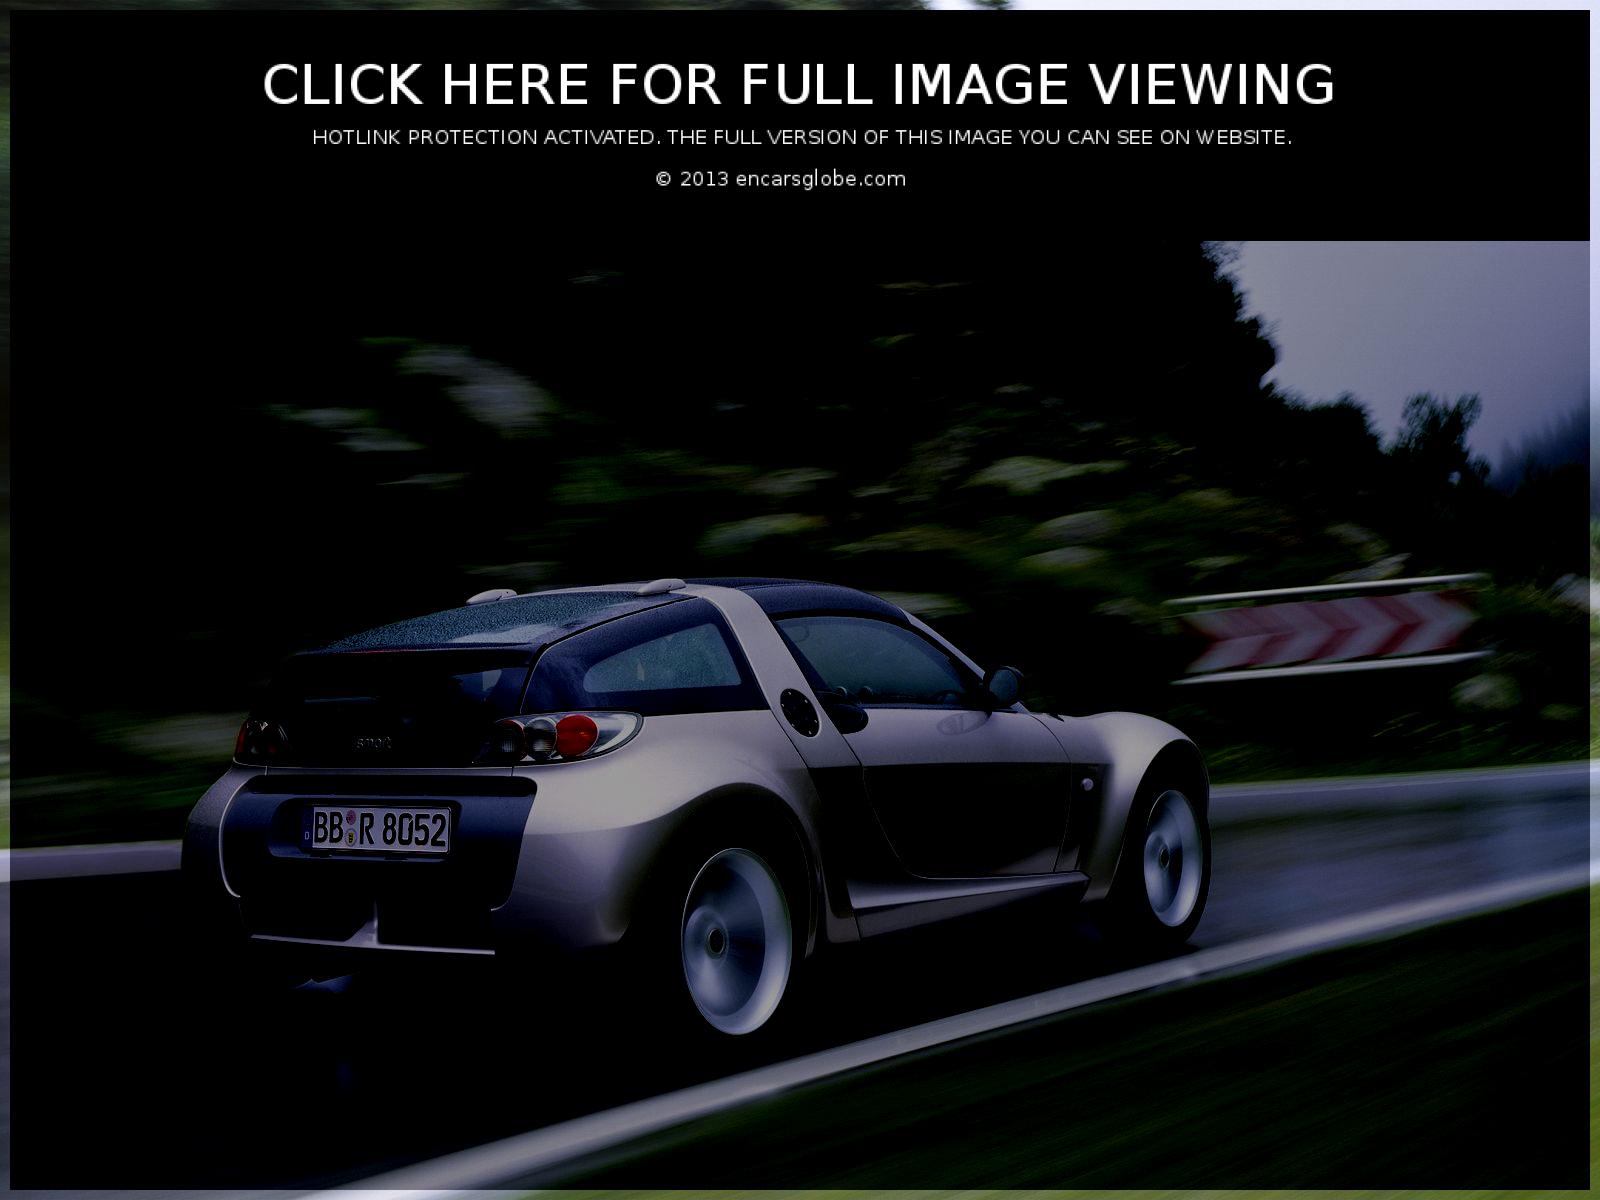 Coup de Roadster intelligent: Galerie de photos, informations complètes sur...